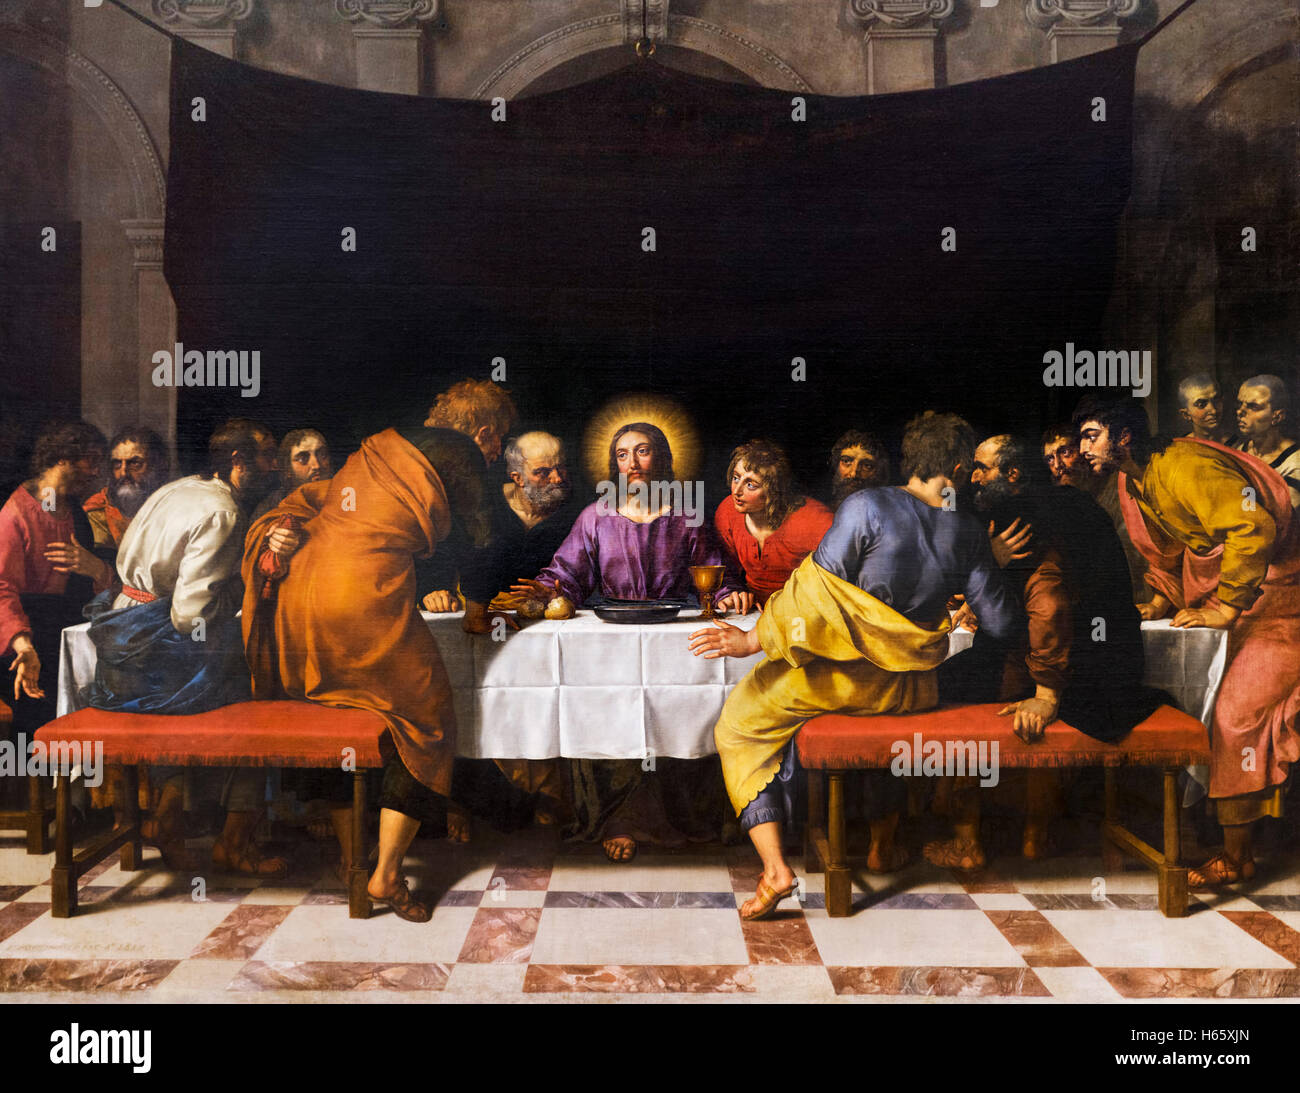 La ultima cena de jesus fotografías e imágenes de alta resolución - Alamy